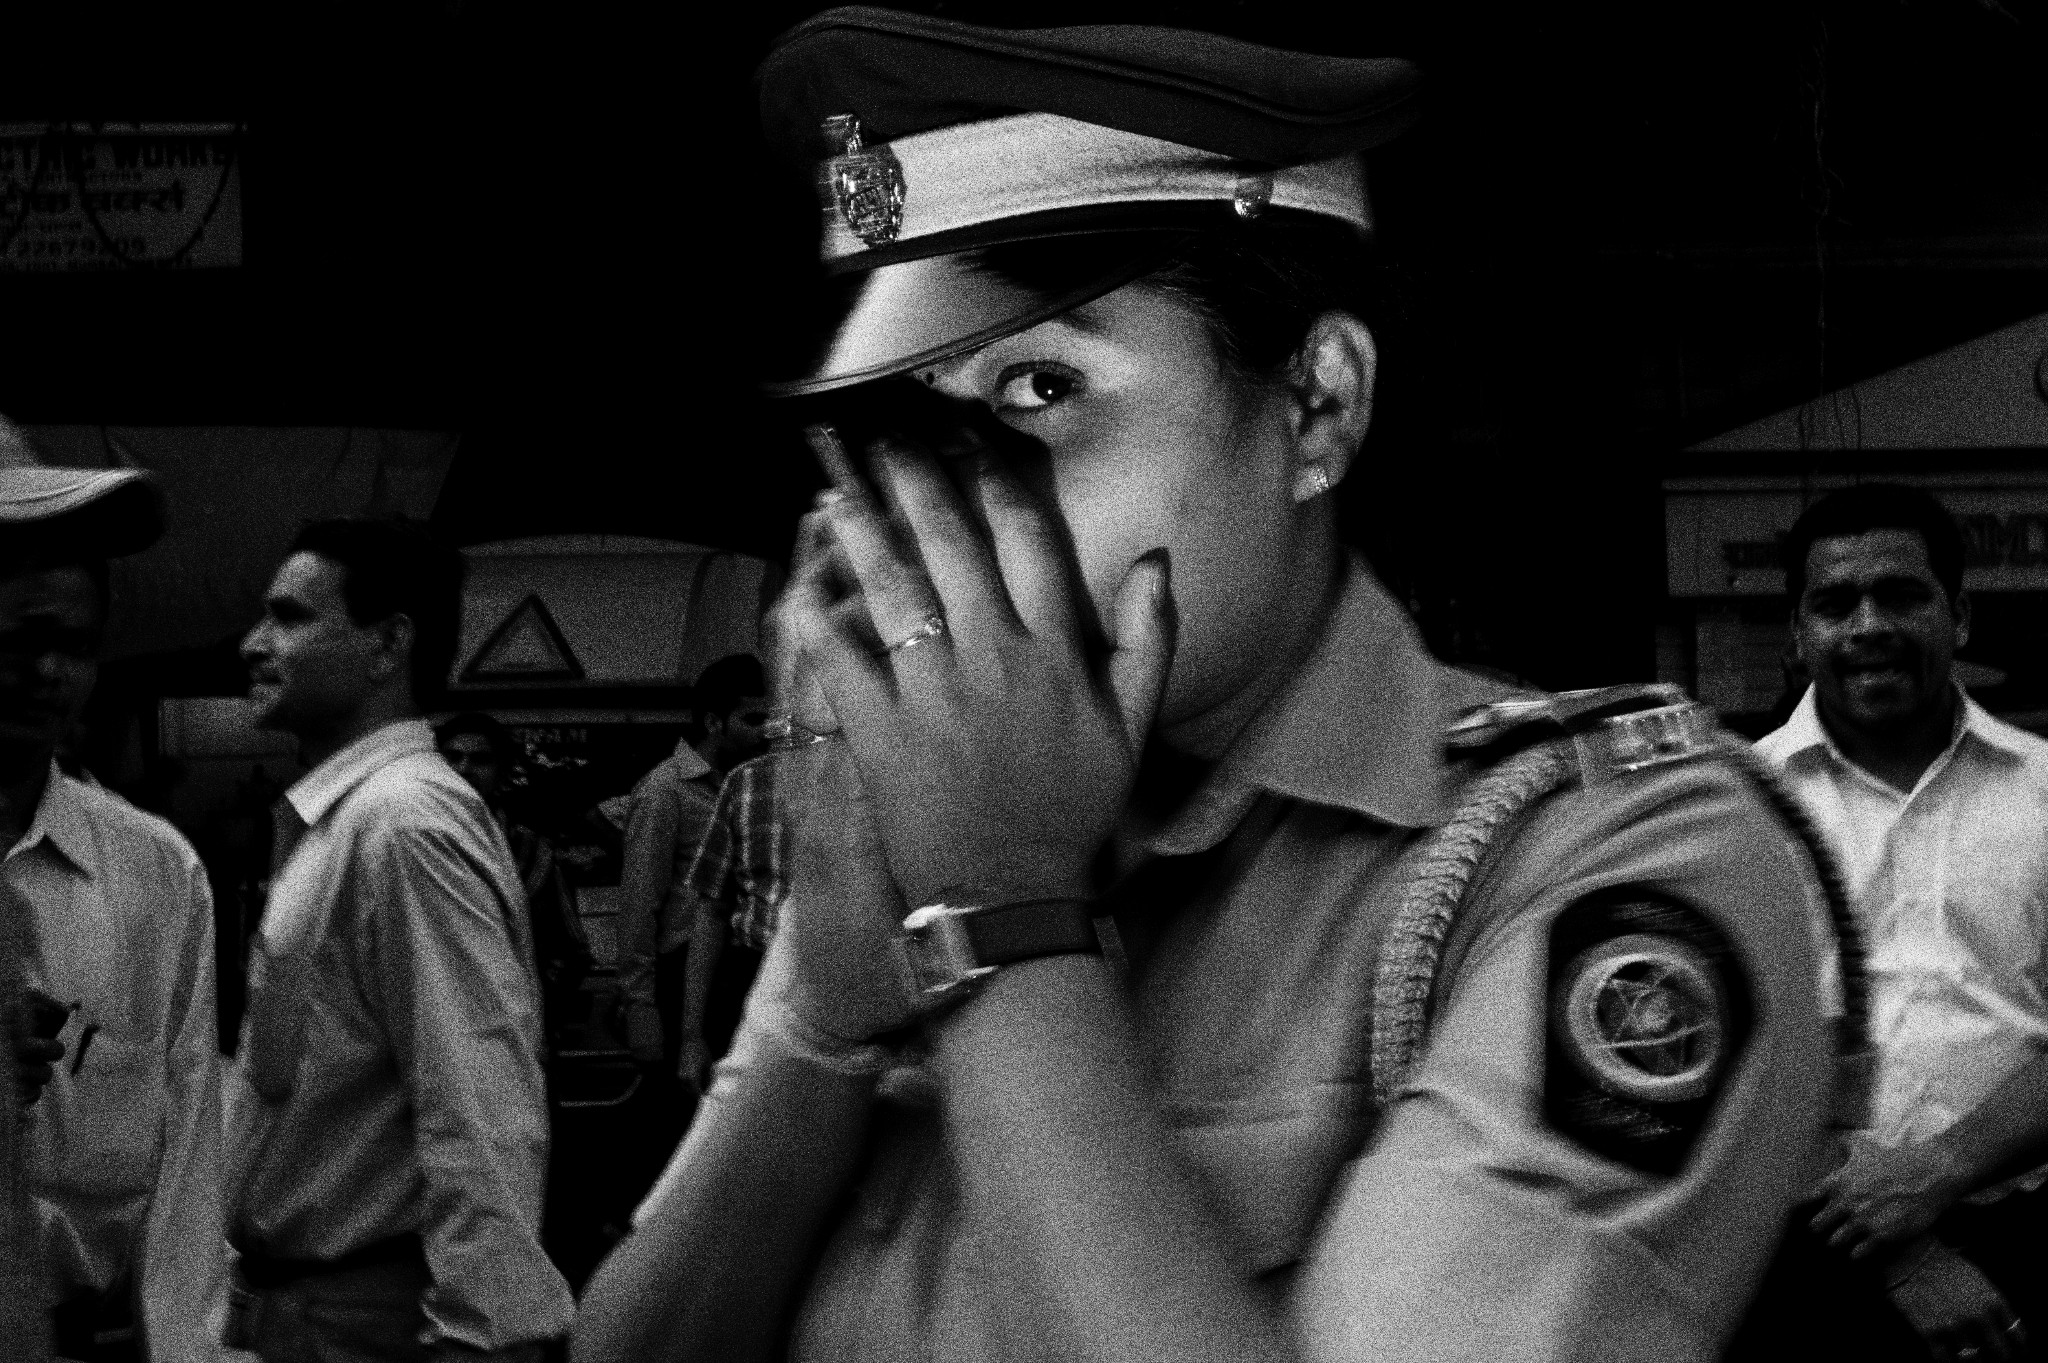 Whisper. Woman cop in Mumbai, 2011